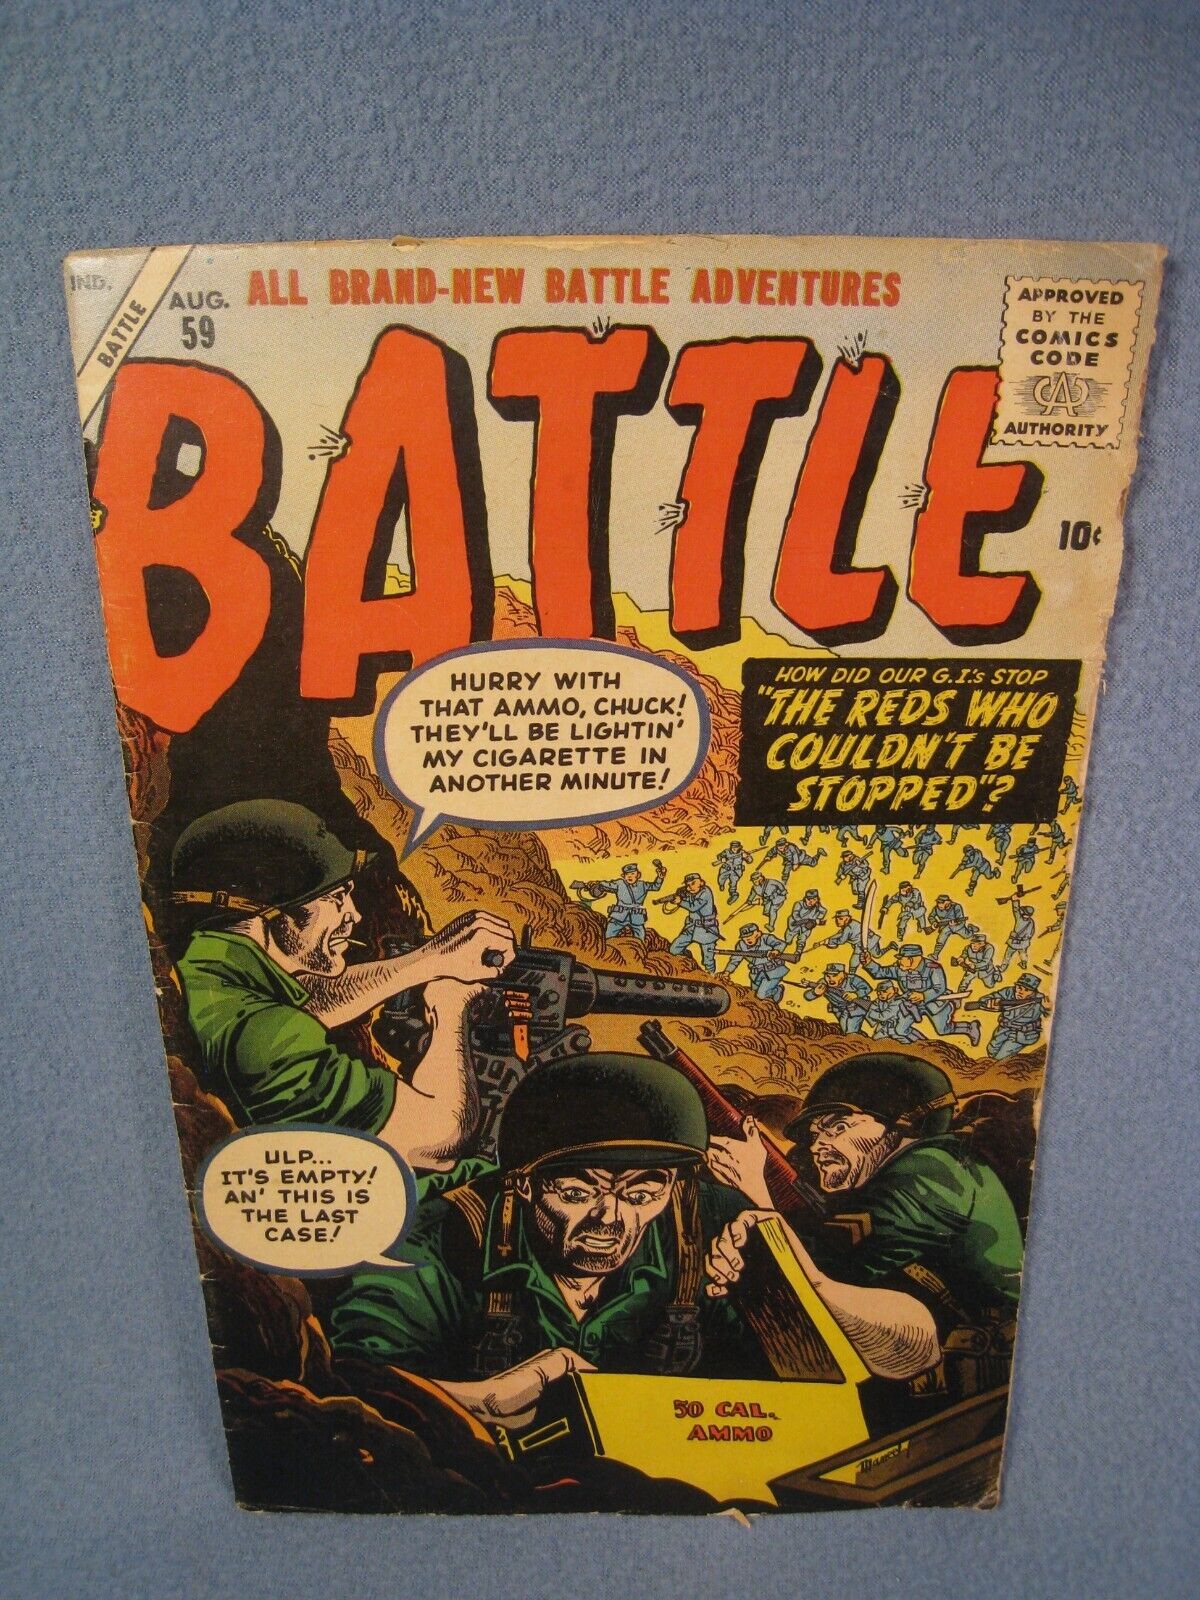 Vintage 1958 10 Cent Battle Comic book Vol 1 No. 59